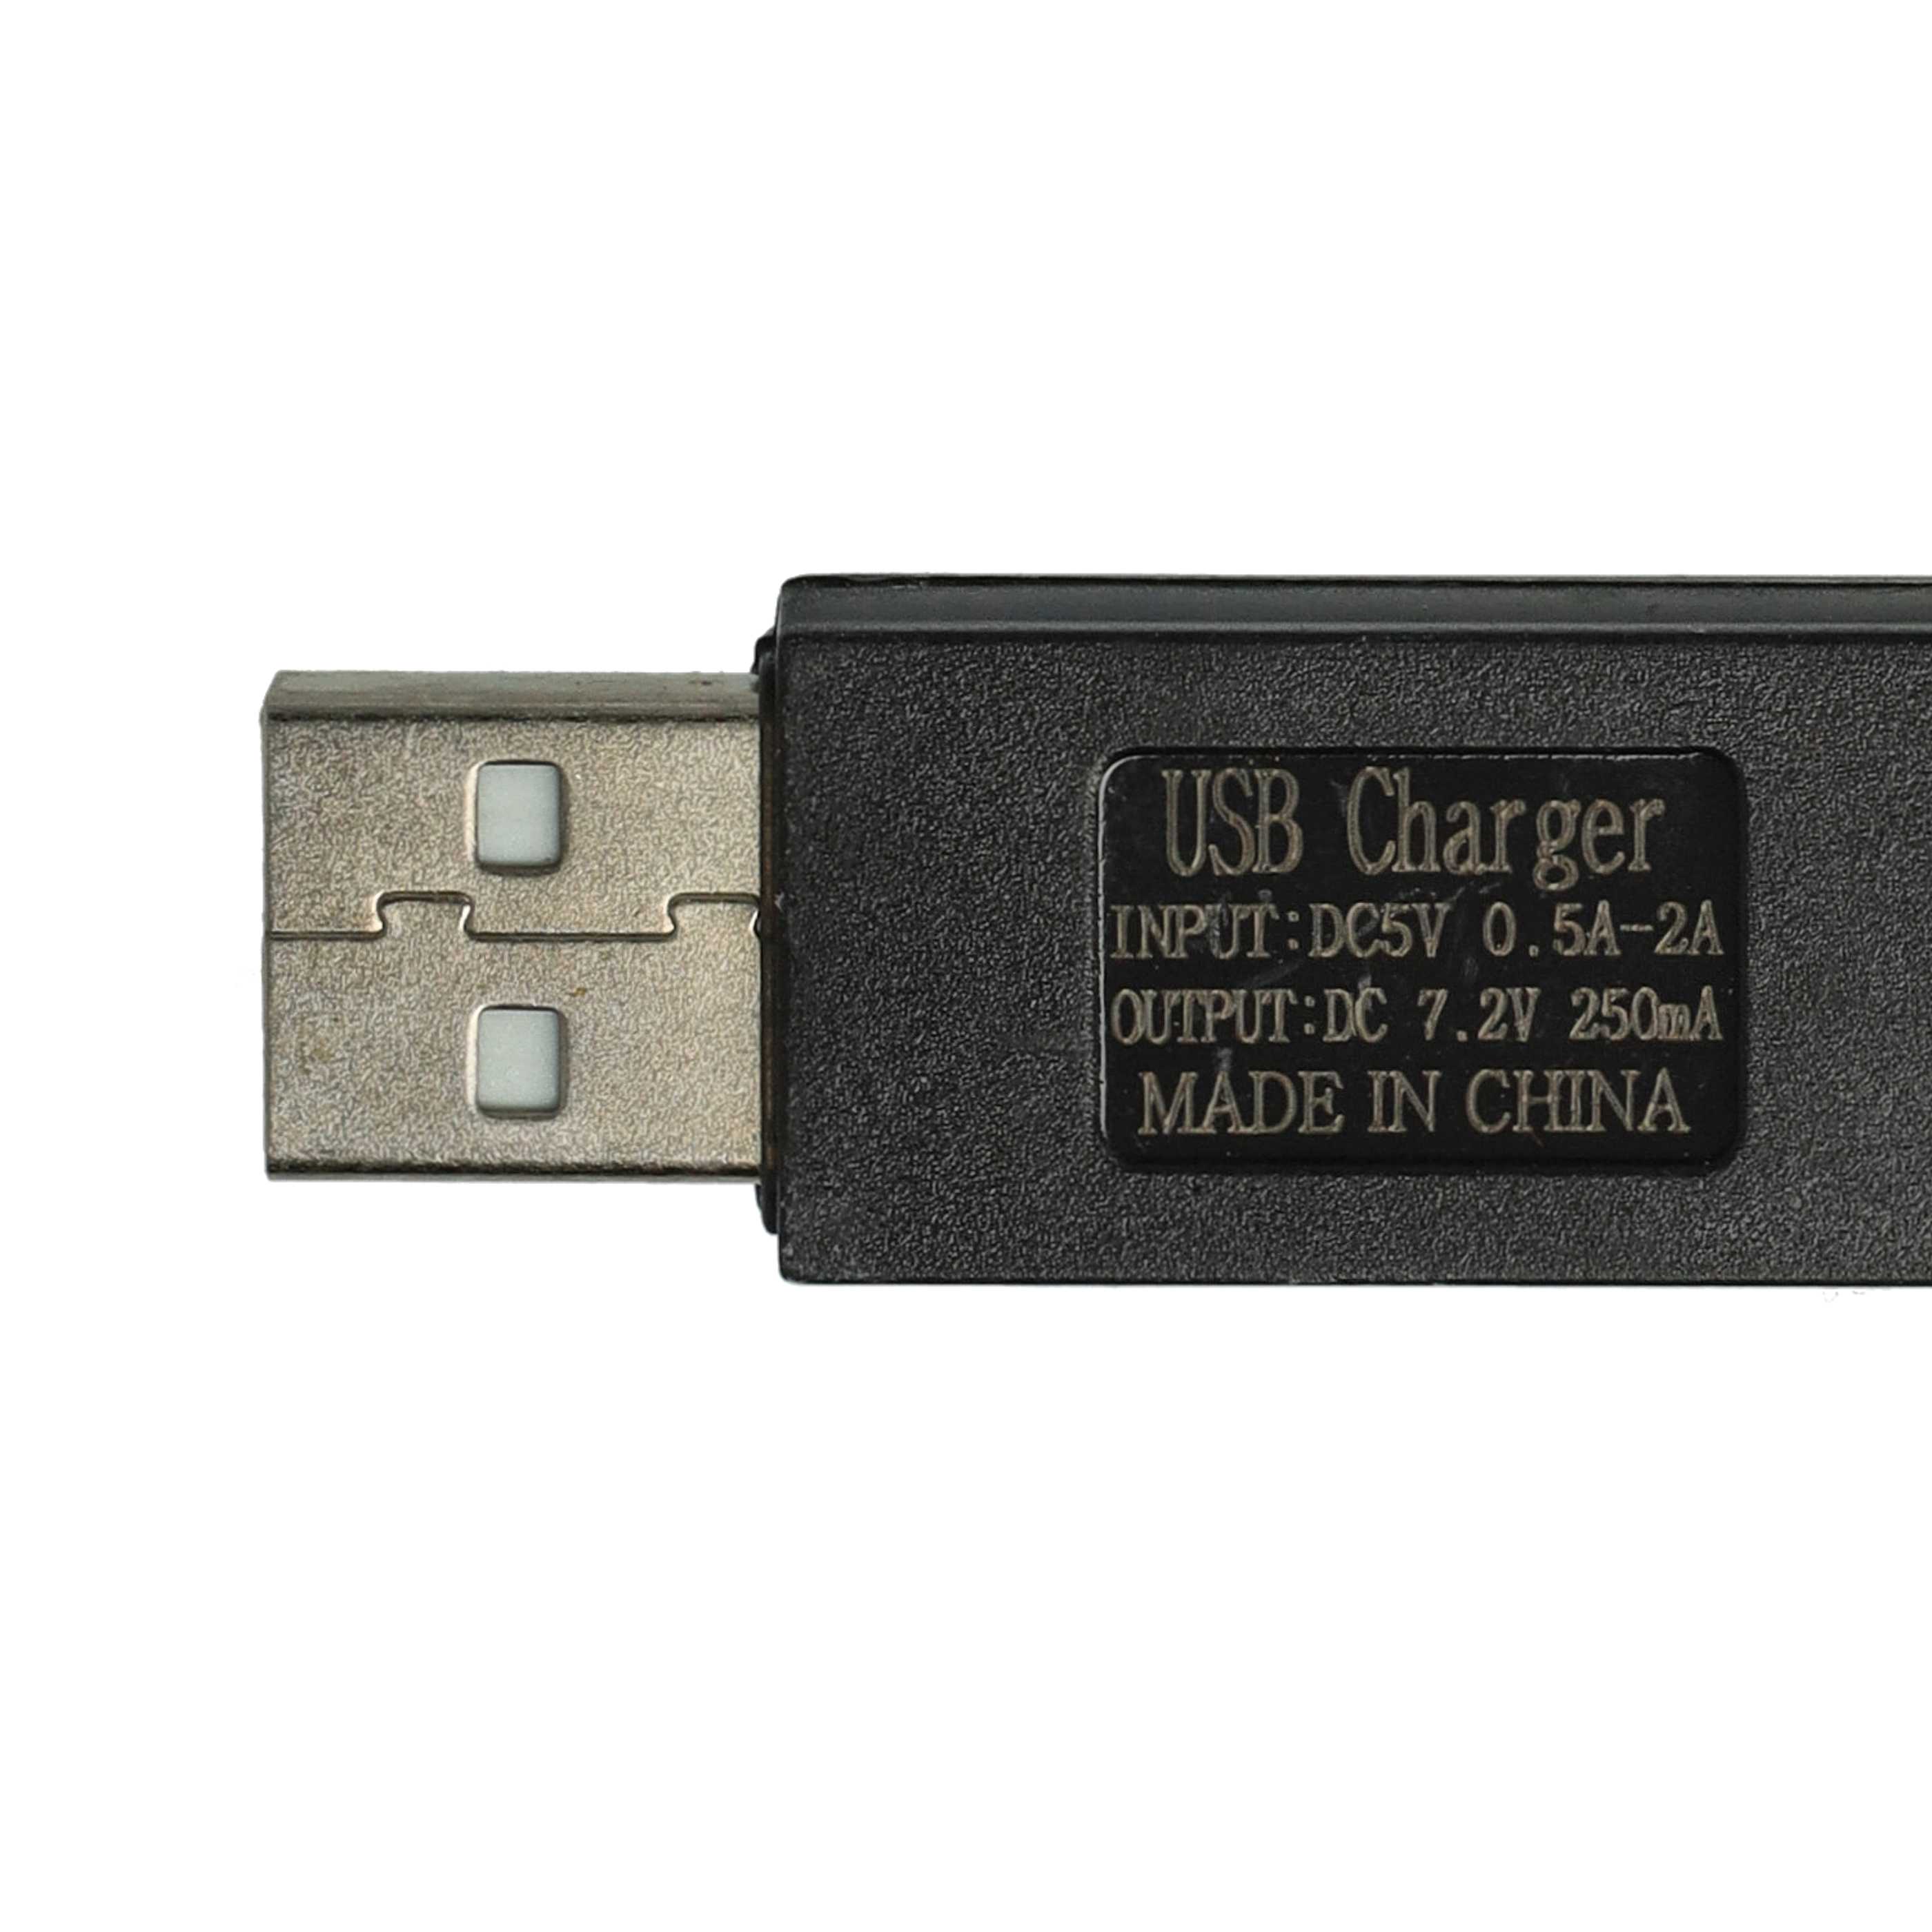 USB-Ladekabel passend für RC-Akkus mit Tamiya-Anschluss, RC-Modellbau Akkupacks - 60cm 7,2V